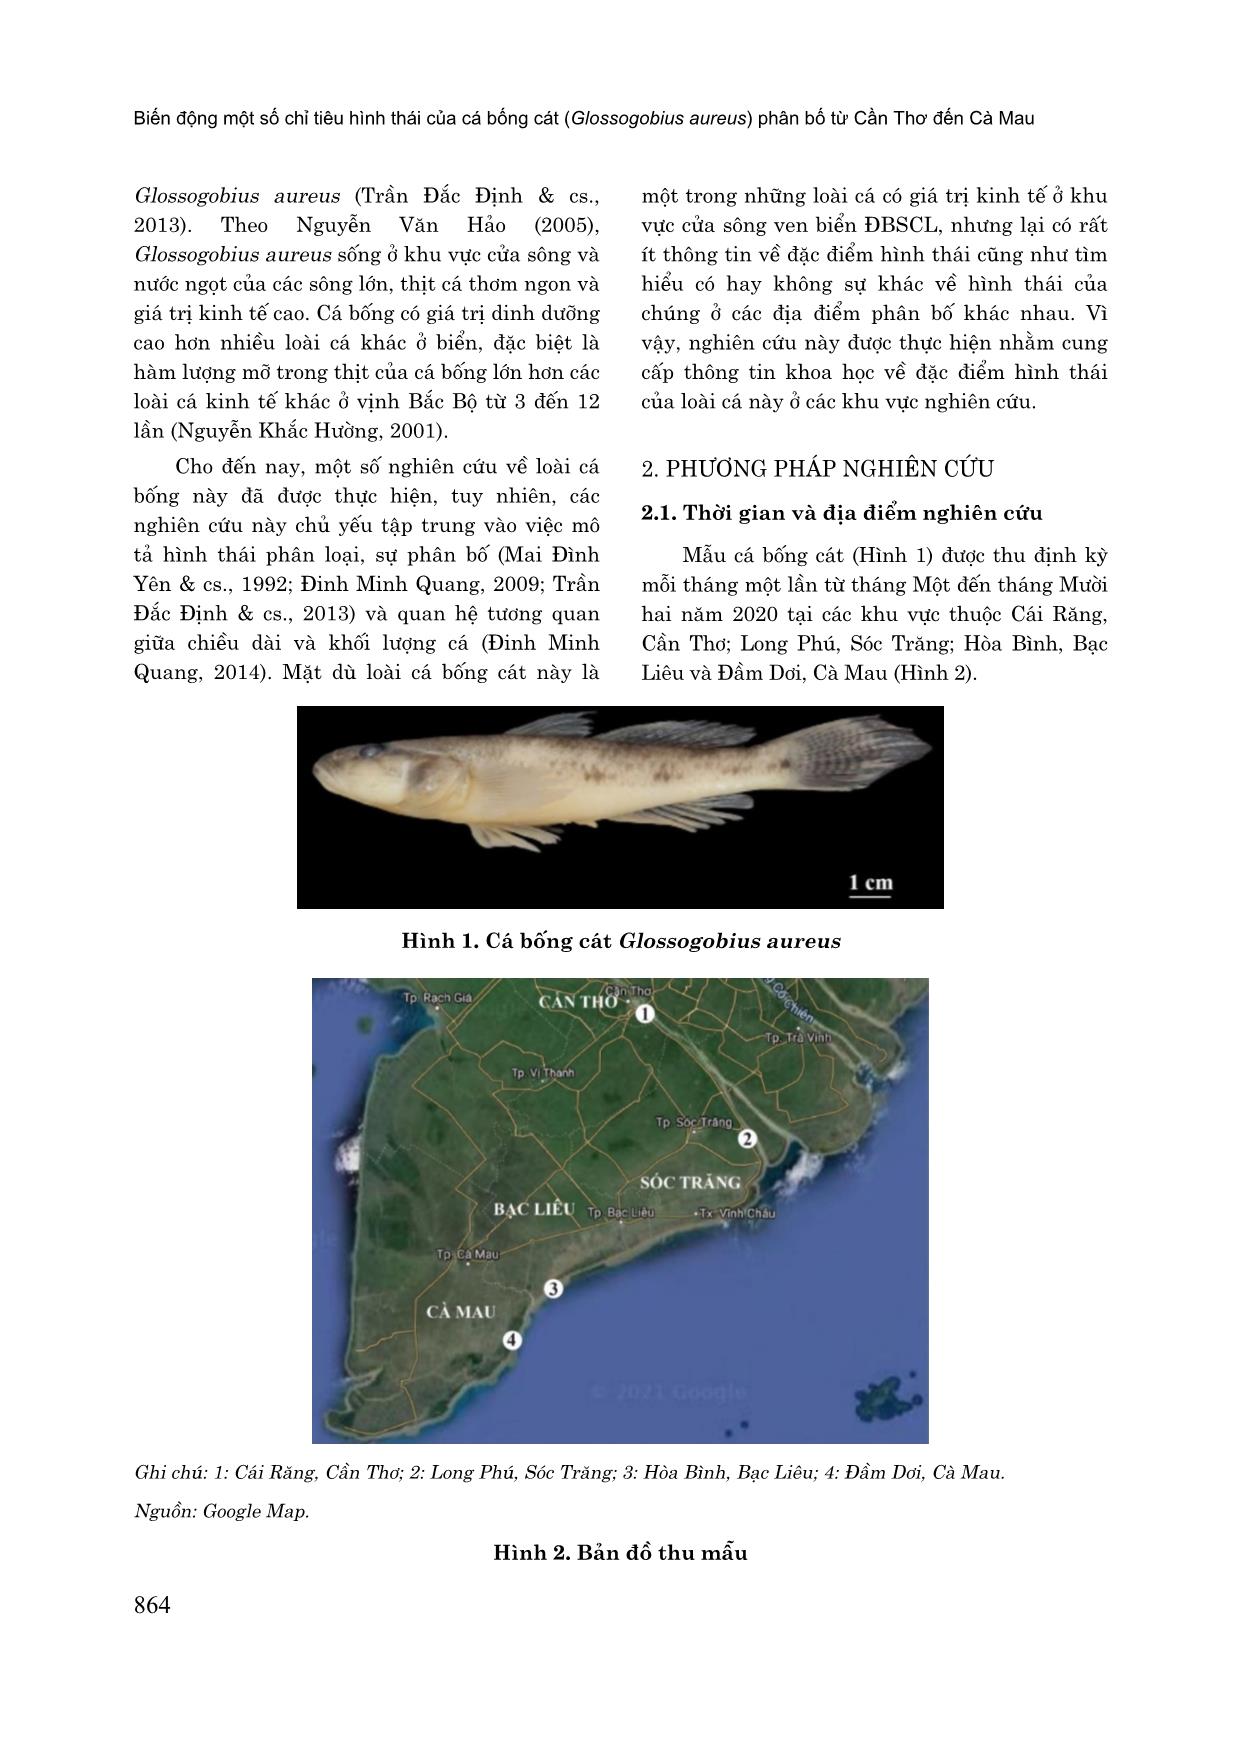 Biến động một số chỉ tiêu hình thái của cá bống cát (Glossogobius aureus) phân bố từ cần thơ đến Cà Mau trang 2